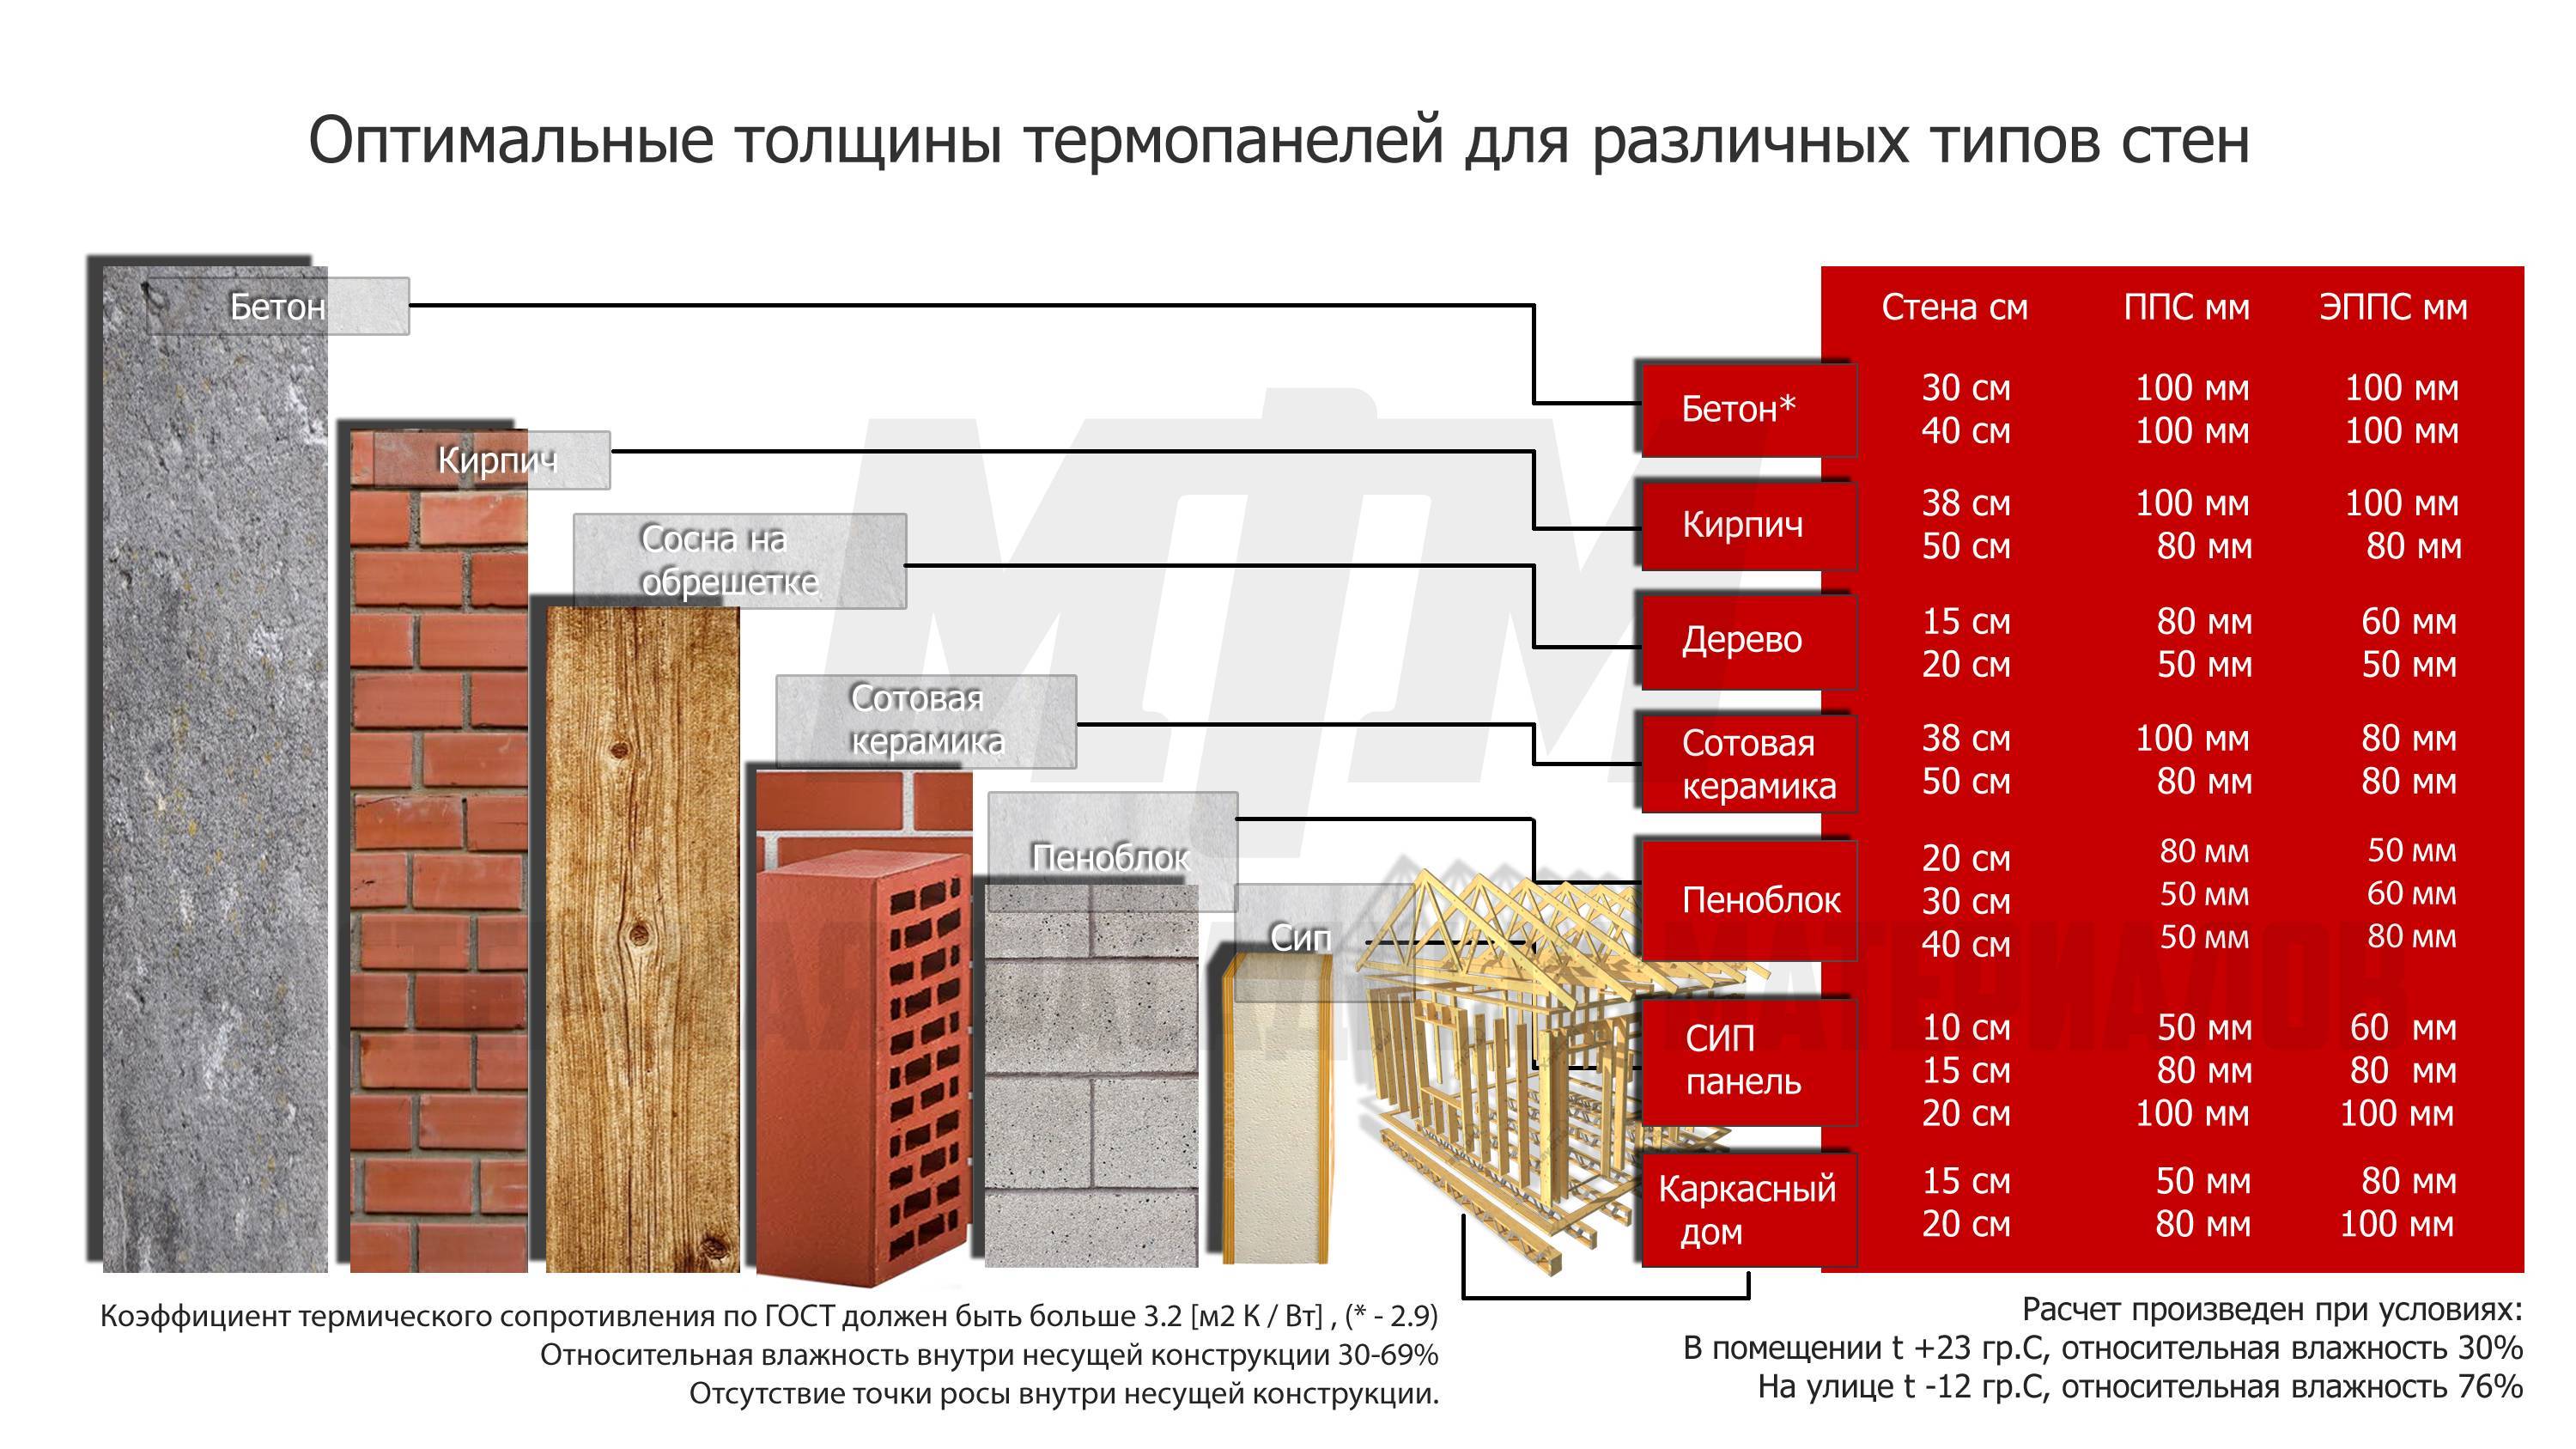 Теплопроводность строительных материалов - таблица!